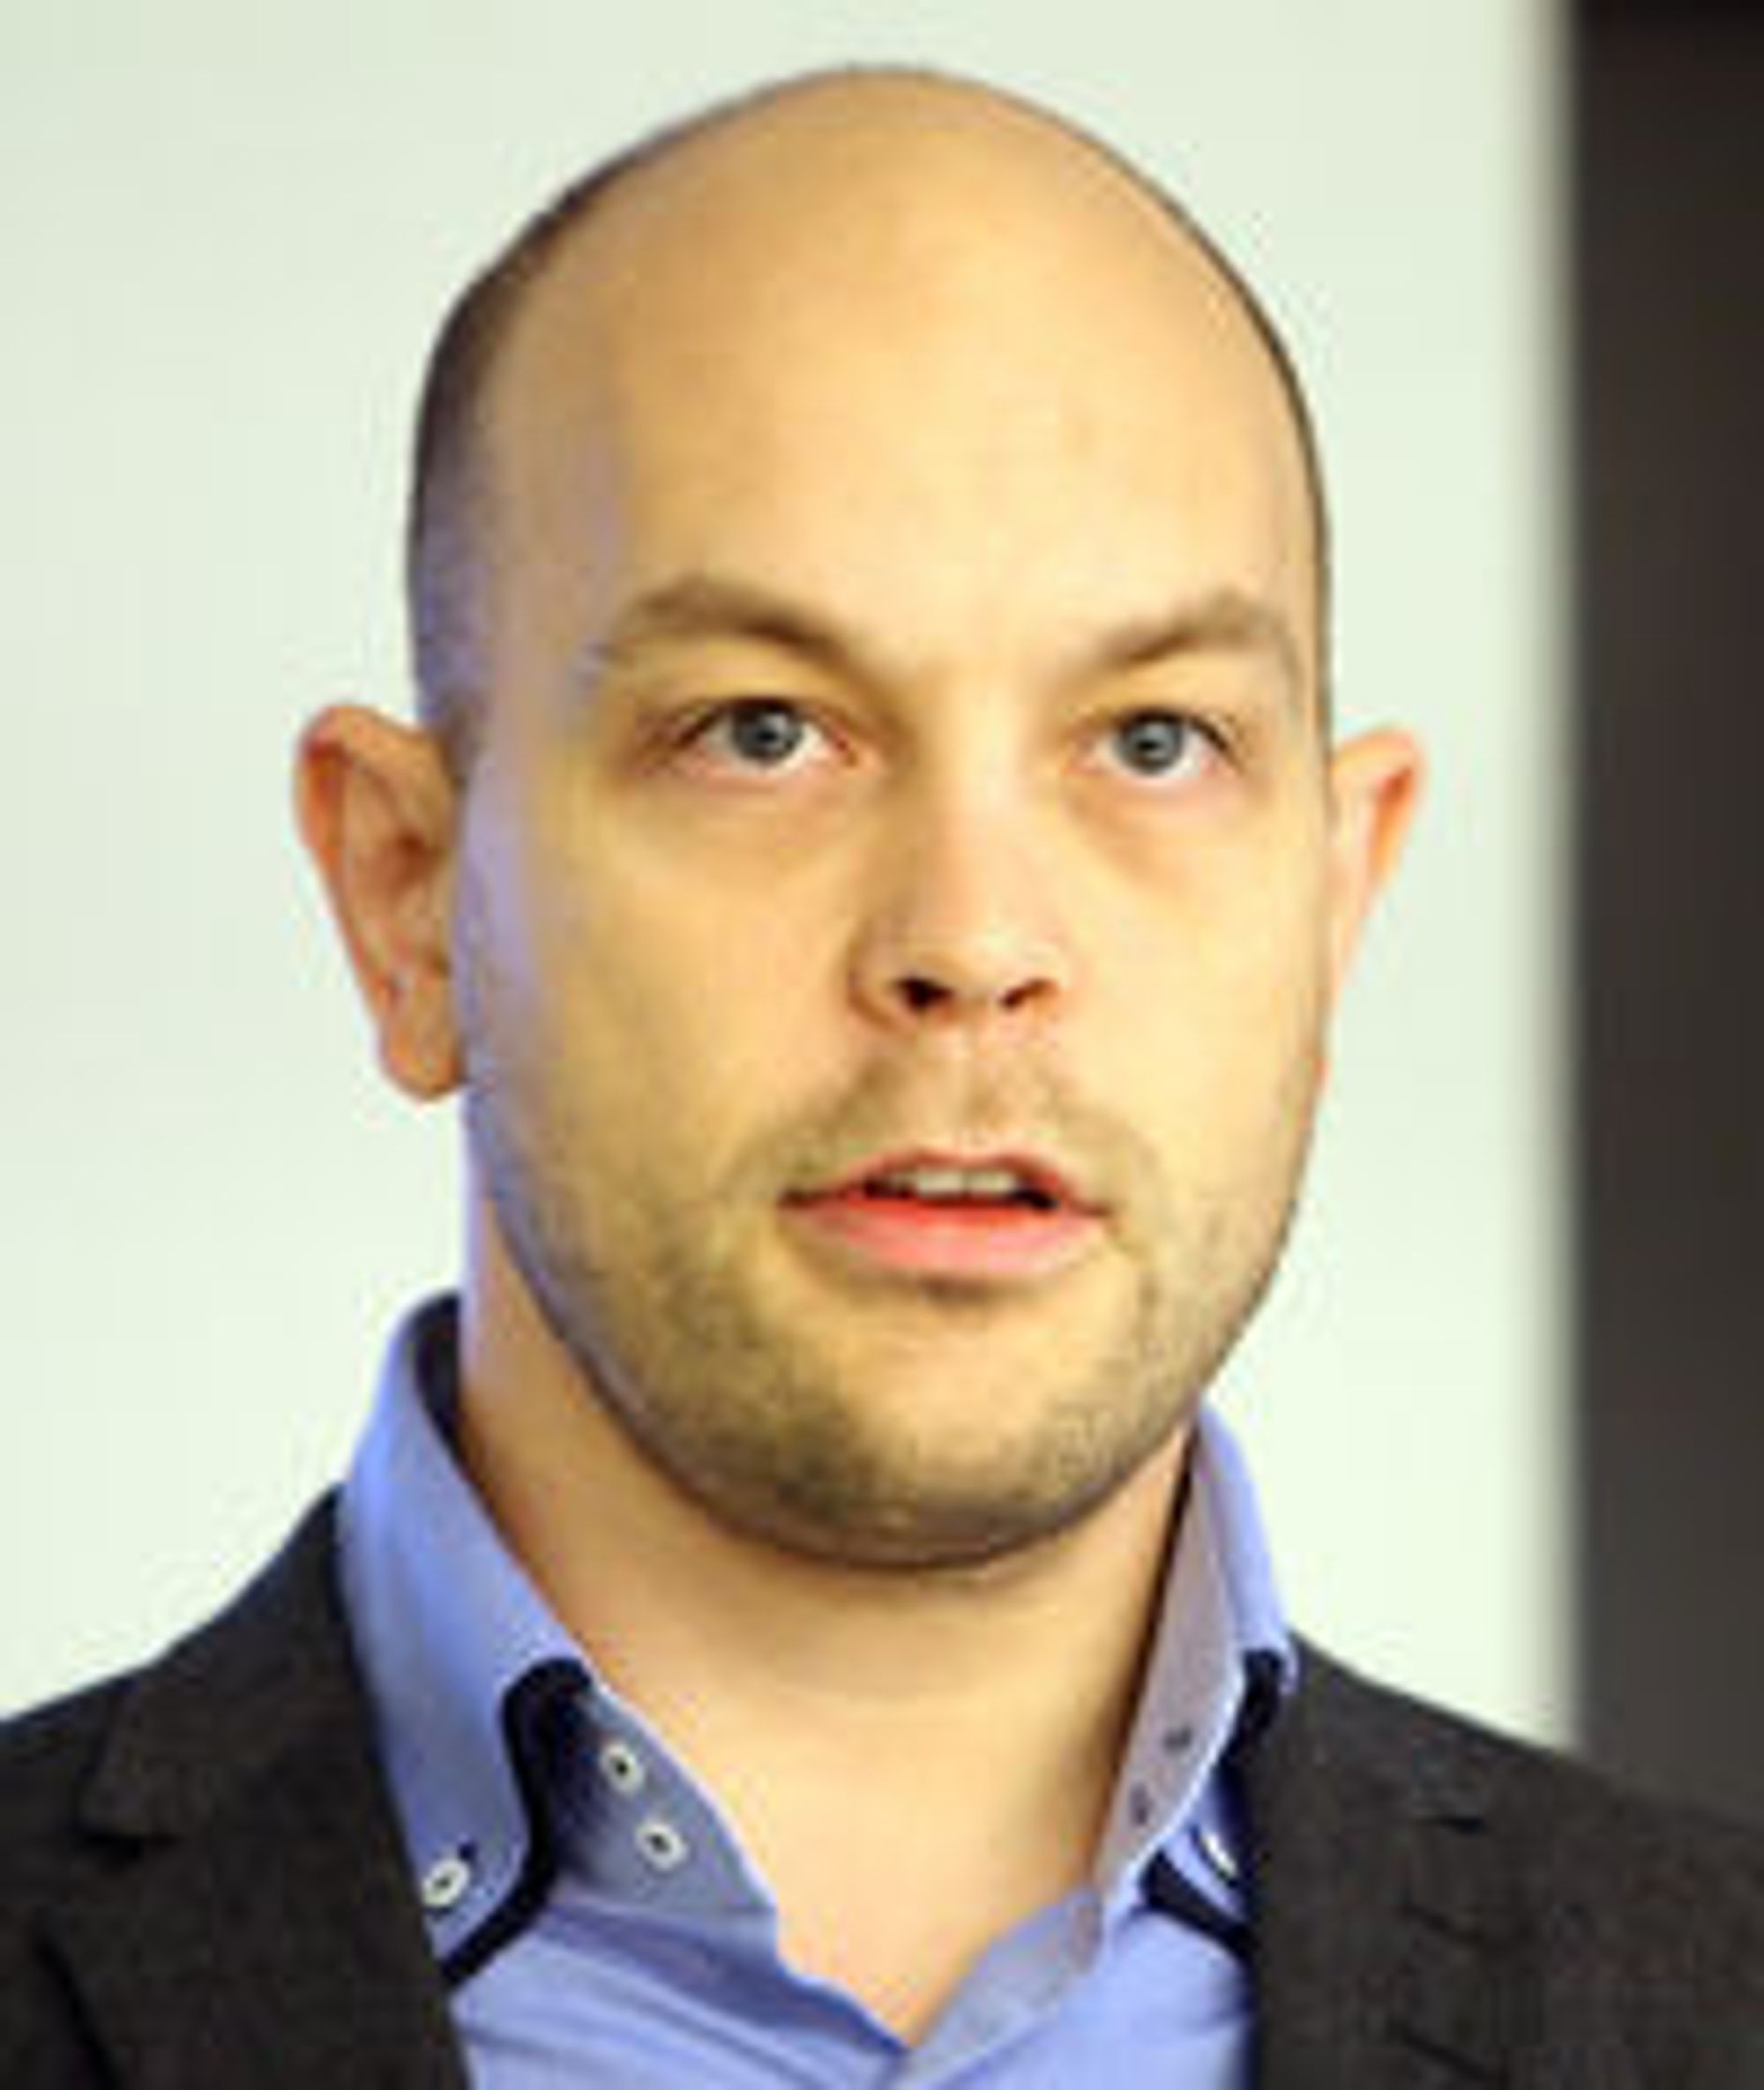 Opprykk: Børge Hansen blir ny teknologidirektør i Microsoft Norge etter Petter Merok.